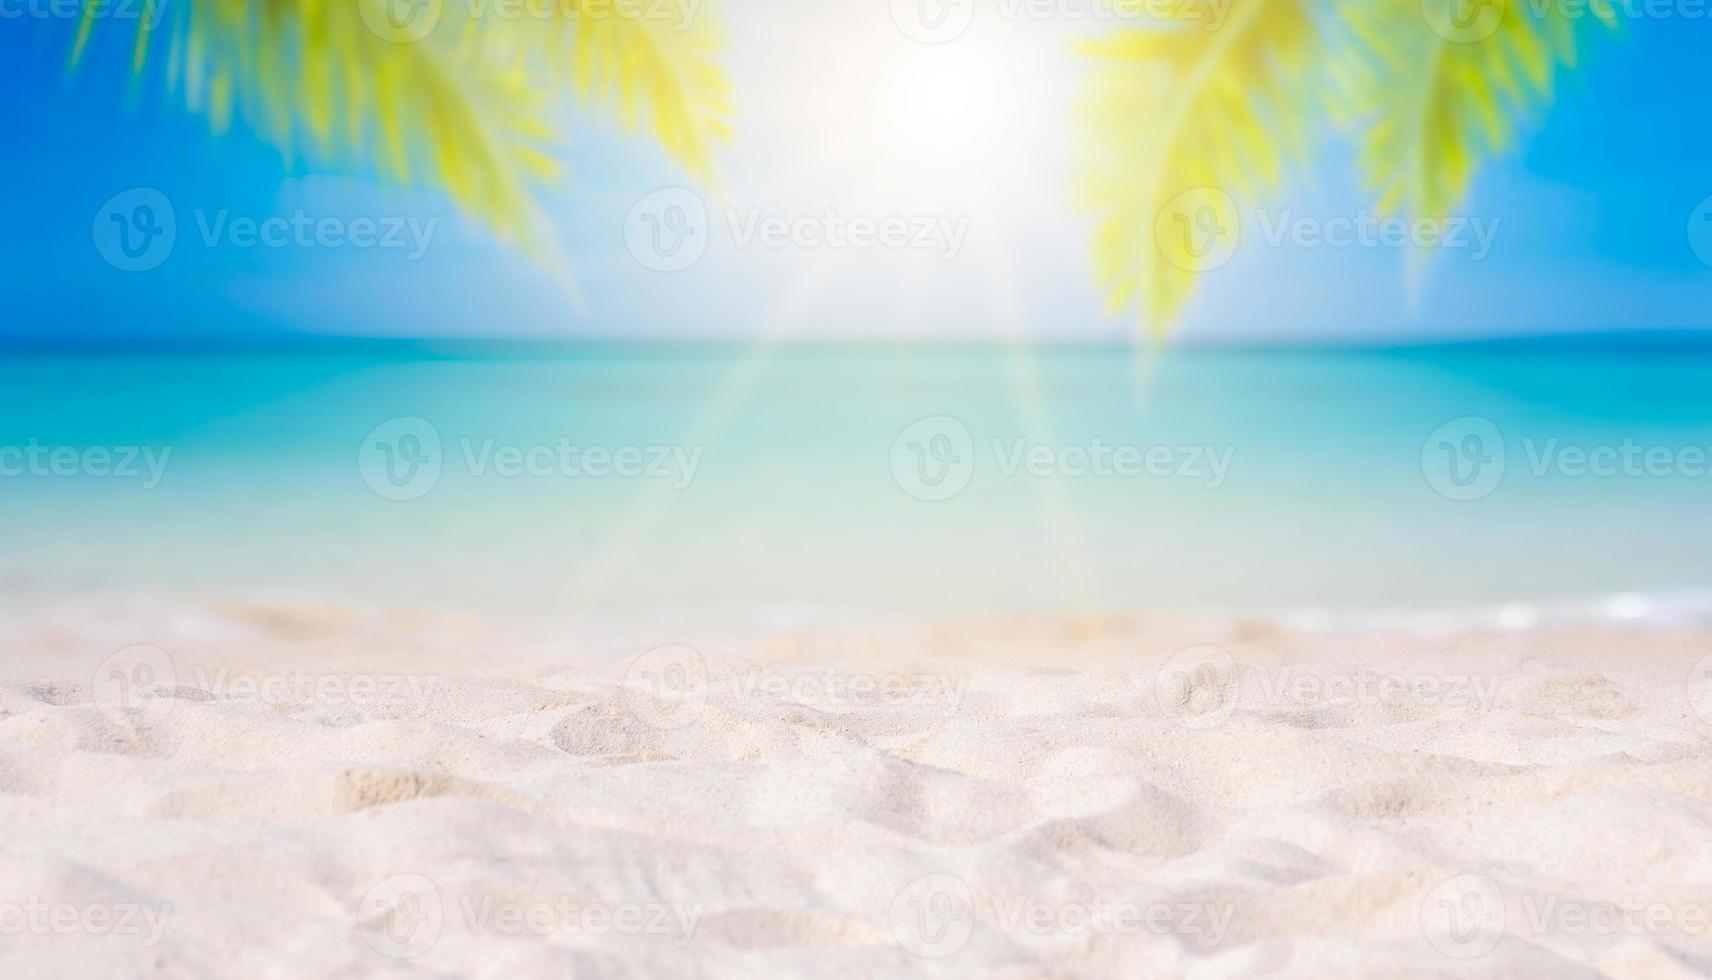 vacanze estive spiaggia di sabbia bianca con spazio per il testo foglie di cocco cornice posteriore vista mare piano energetico foto